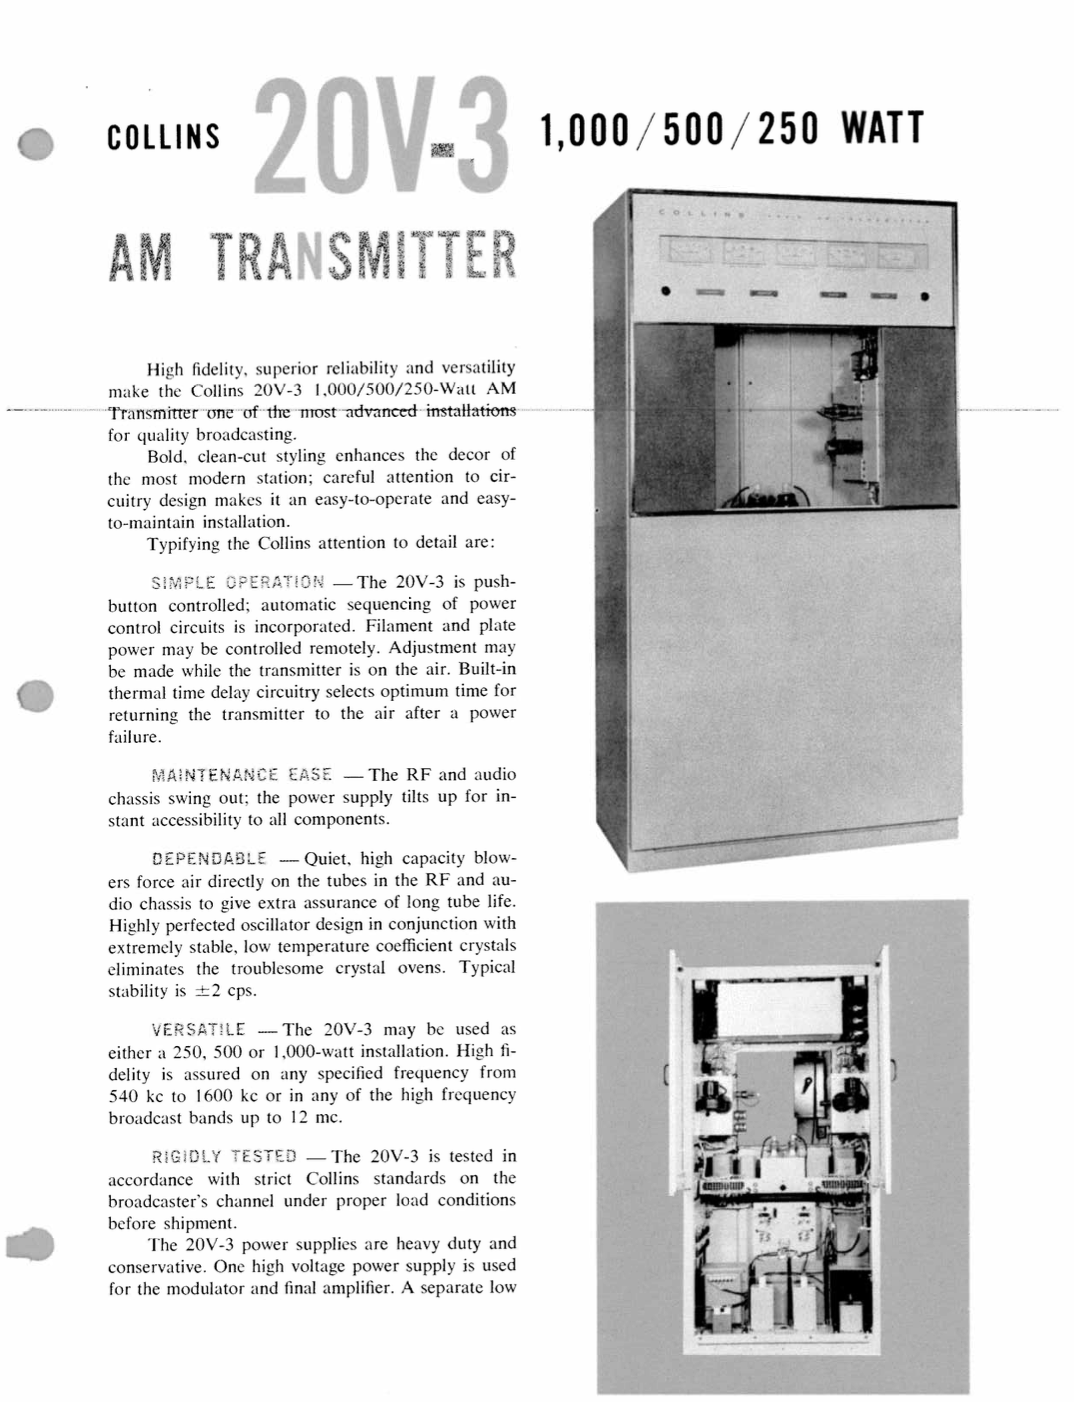 Collins 20V-3 AM Broadcast Transmitter - Product Sheet